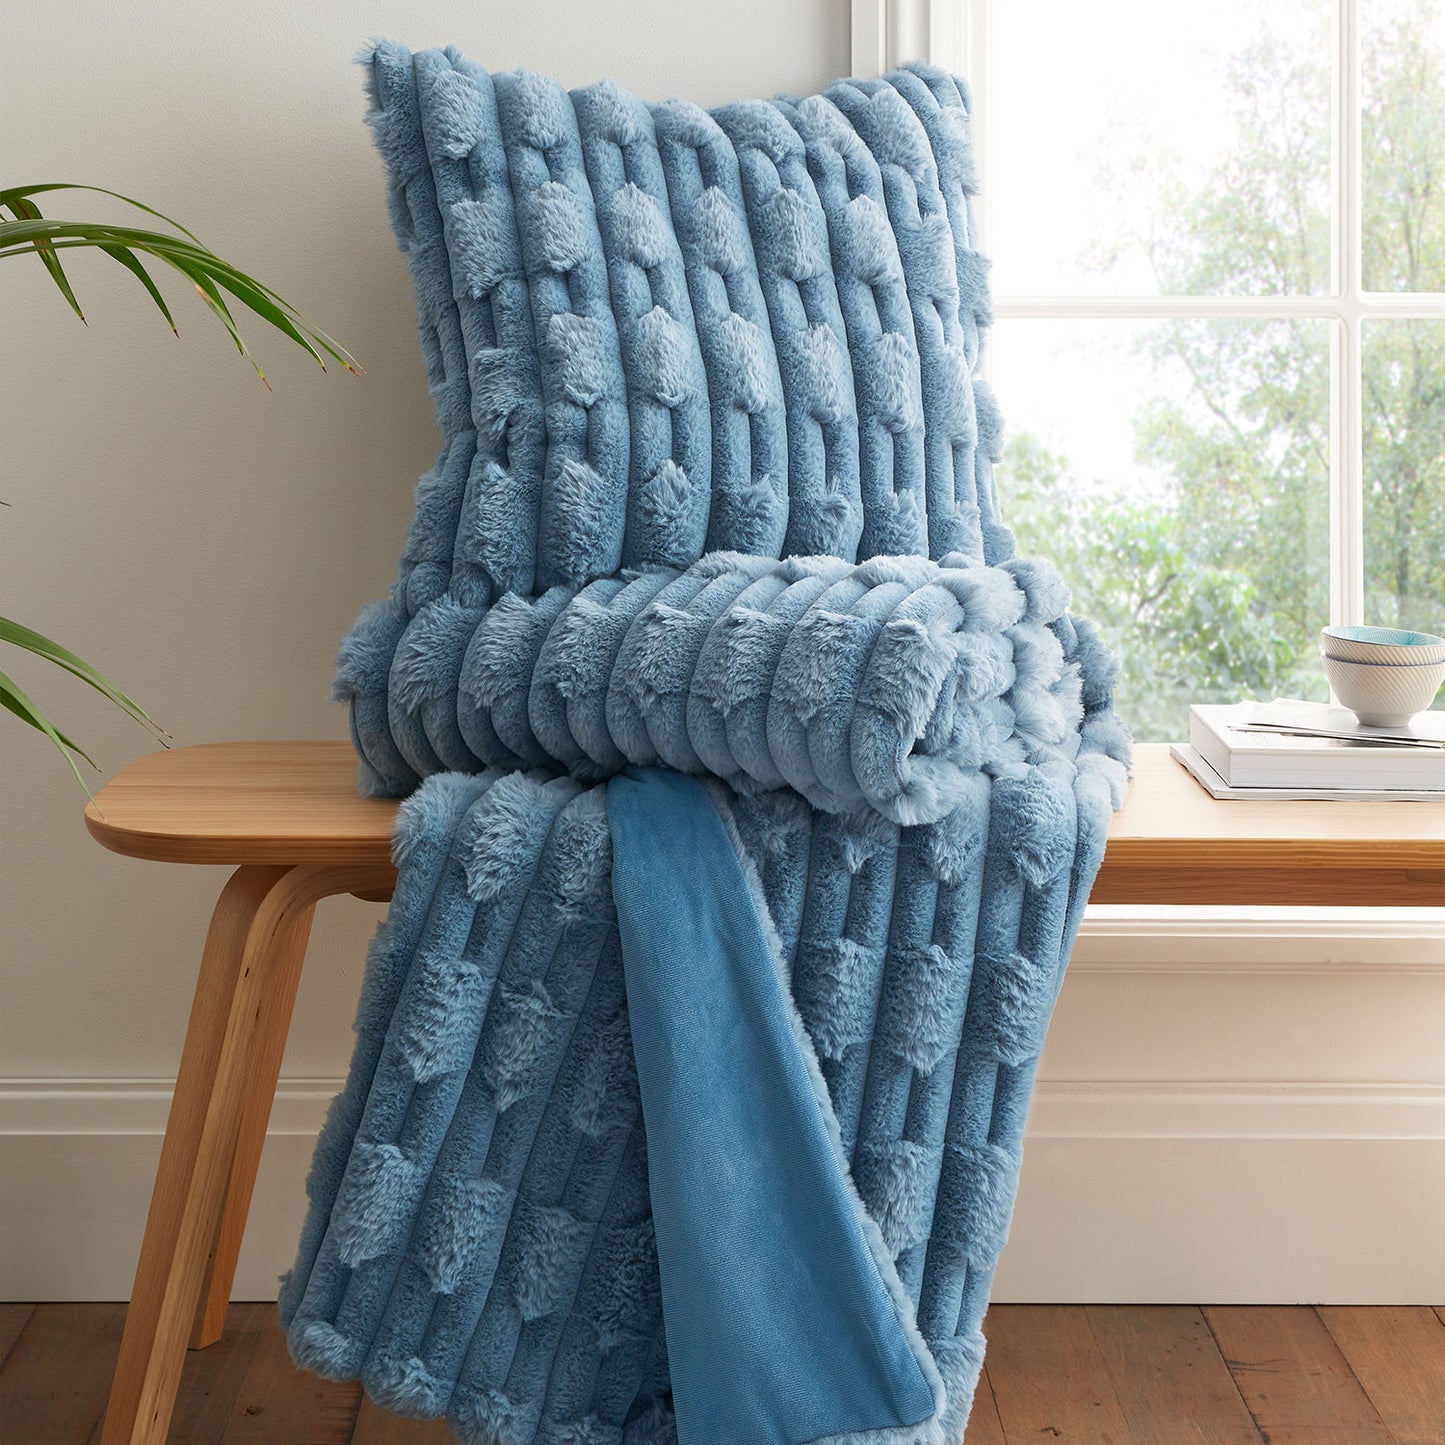 Bianca Blue Carved Faux Fur Large Cushion (50cm x 50cm)